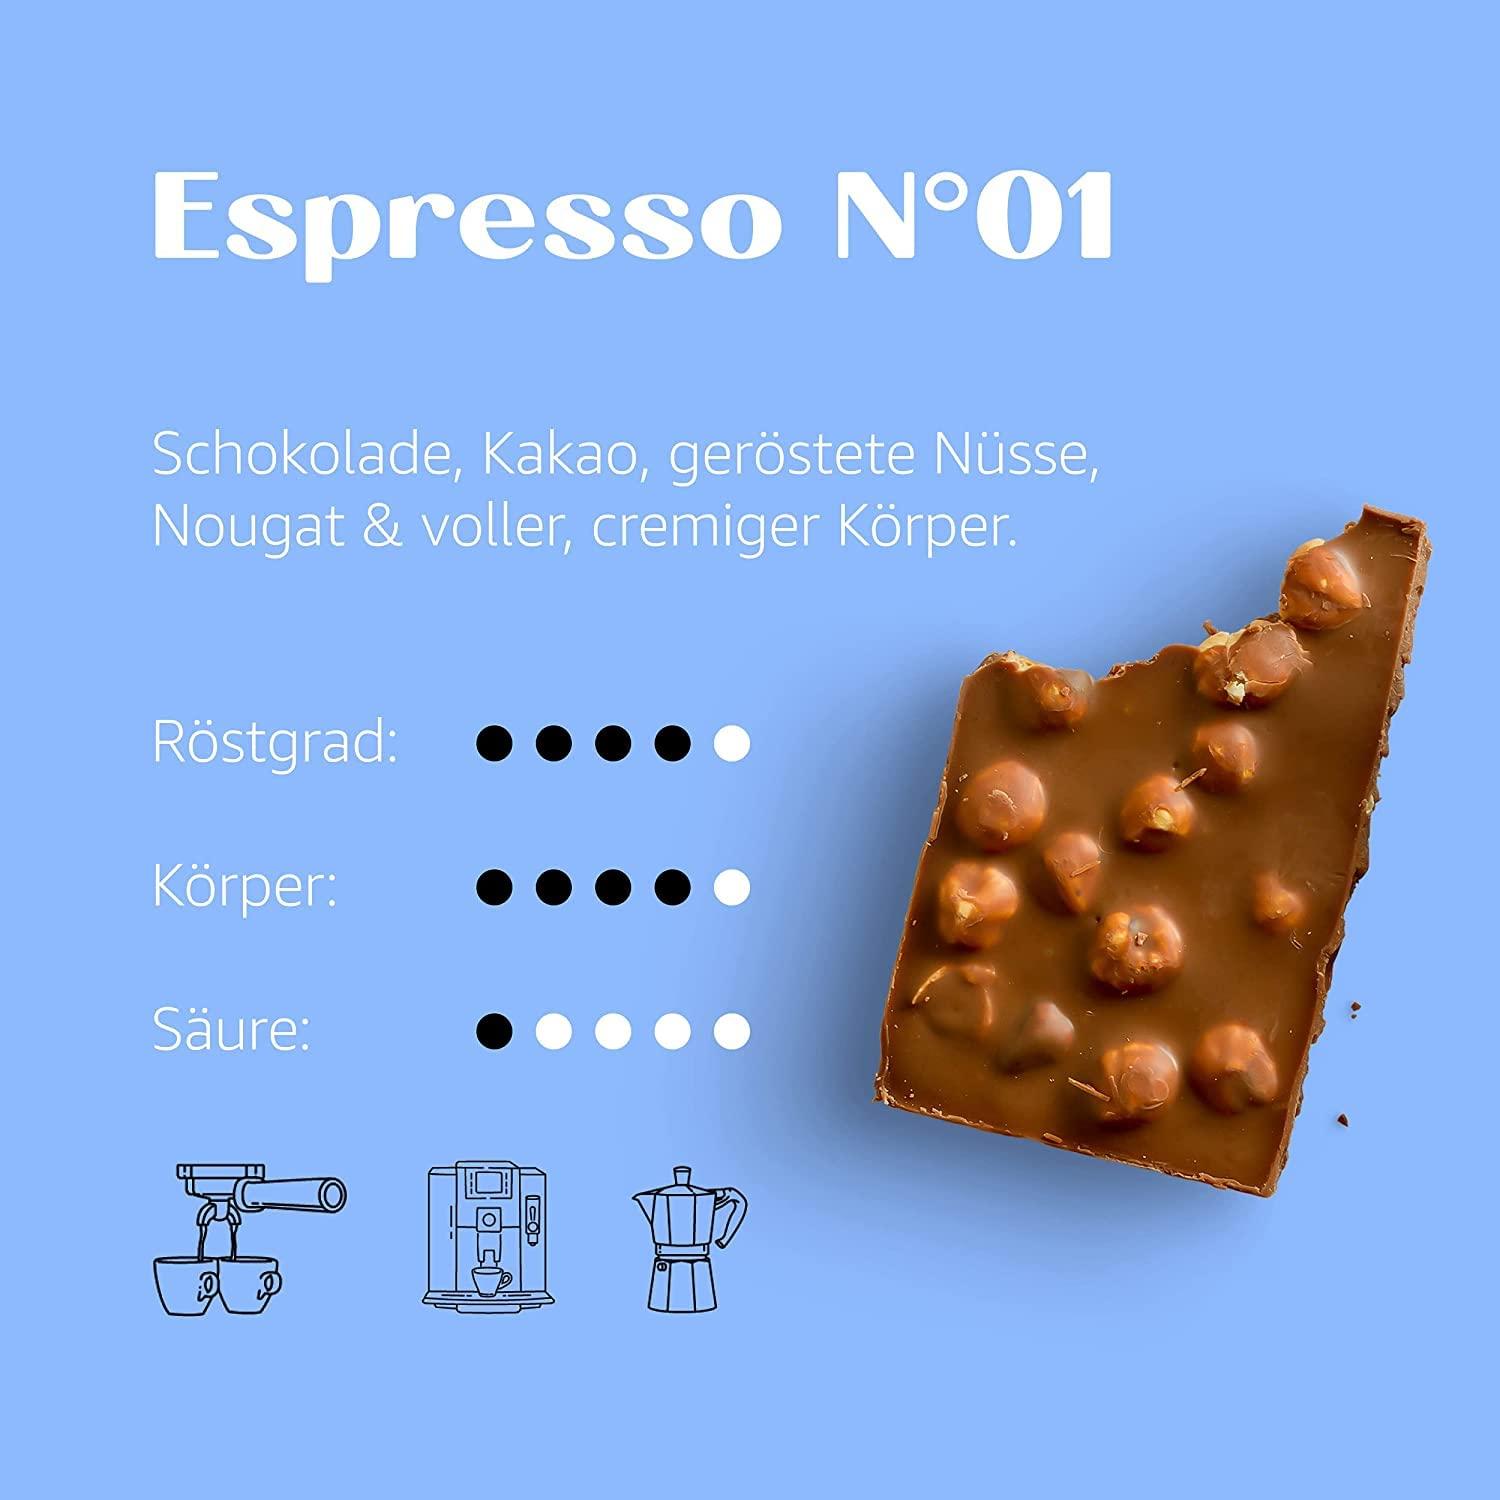 Espresso N°01